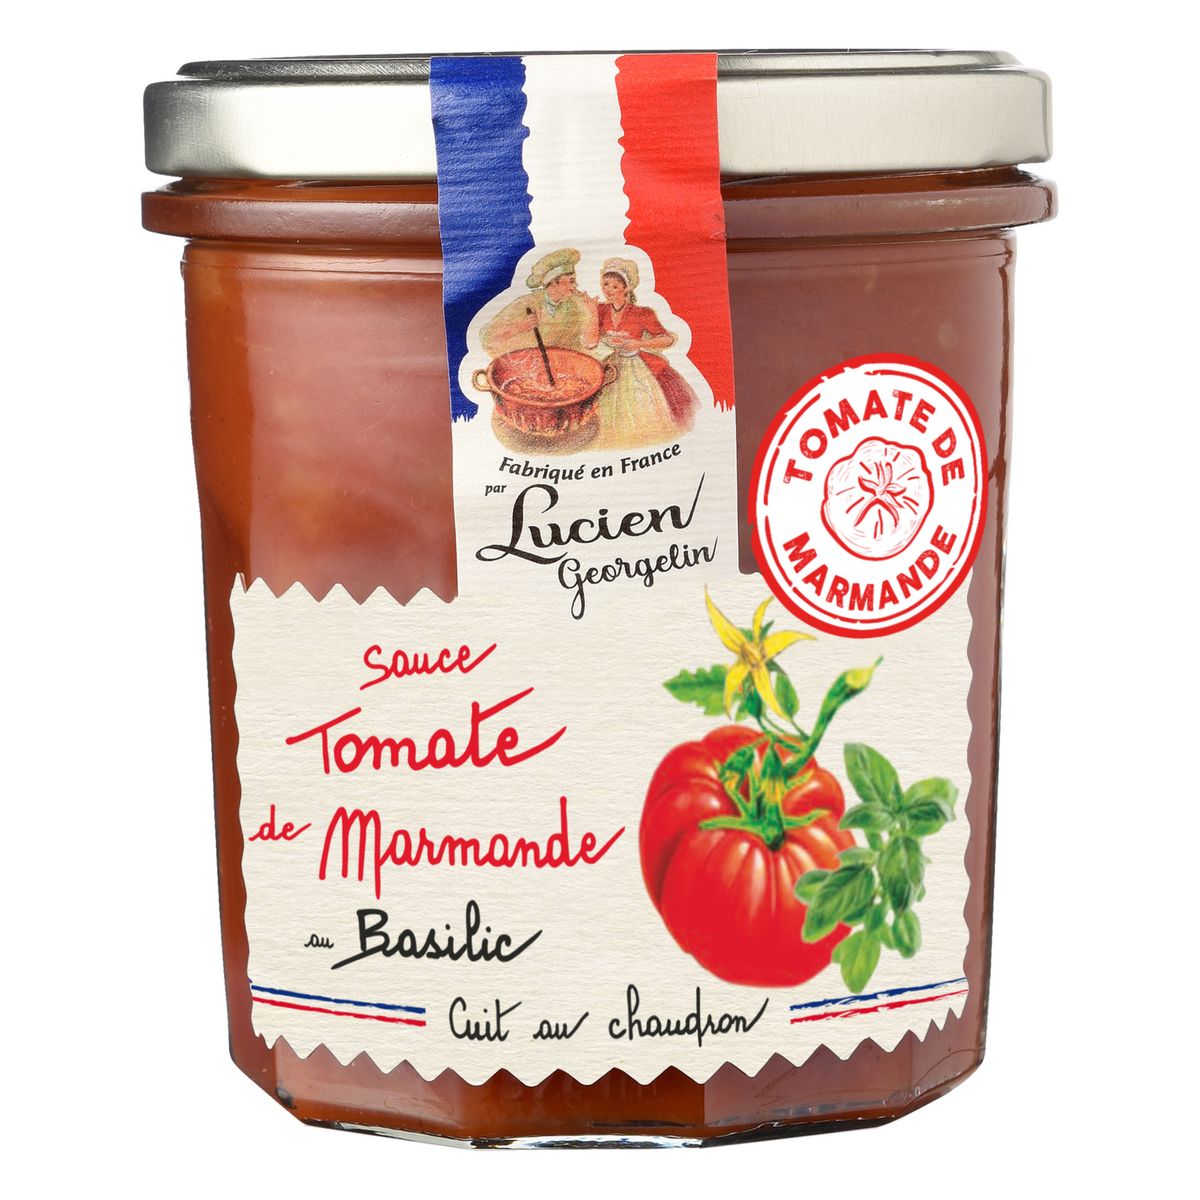 LUCIEN GEORGELIN Sauce tomate de la région de Marmande au basilic en bocal 300g